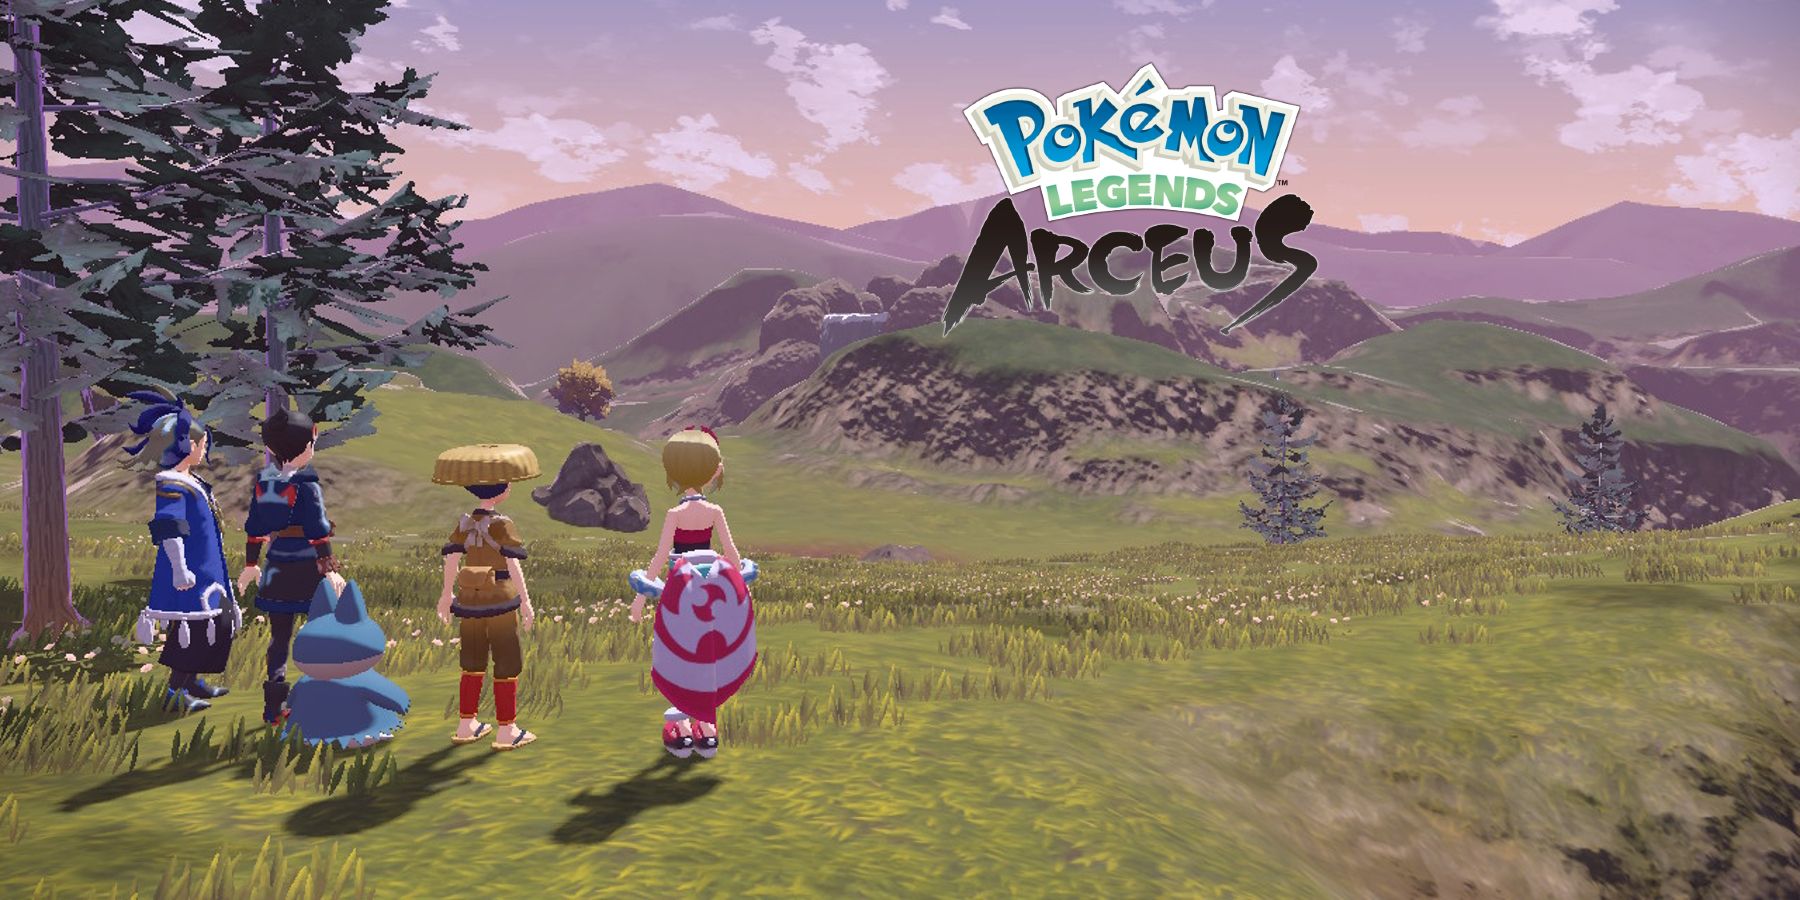 Pokémon Legends: Arceus characters teased for Pokémon Masters EX